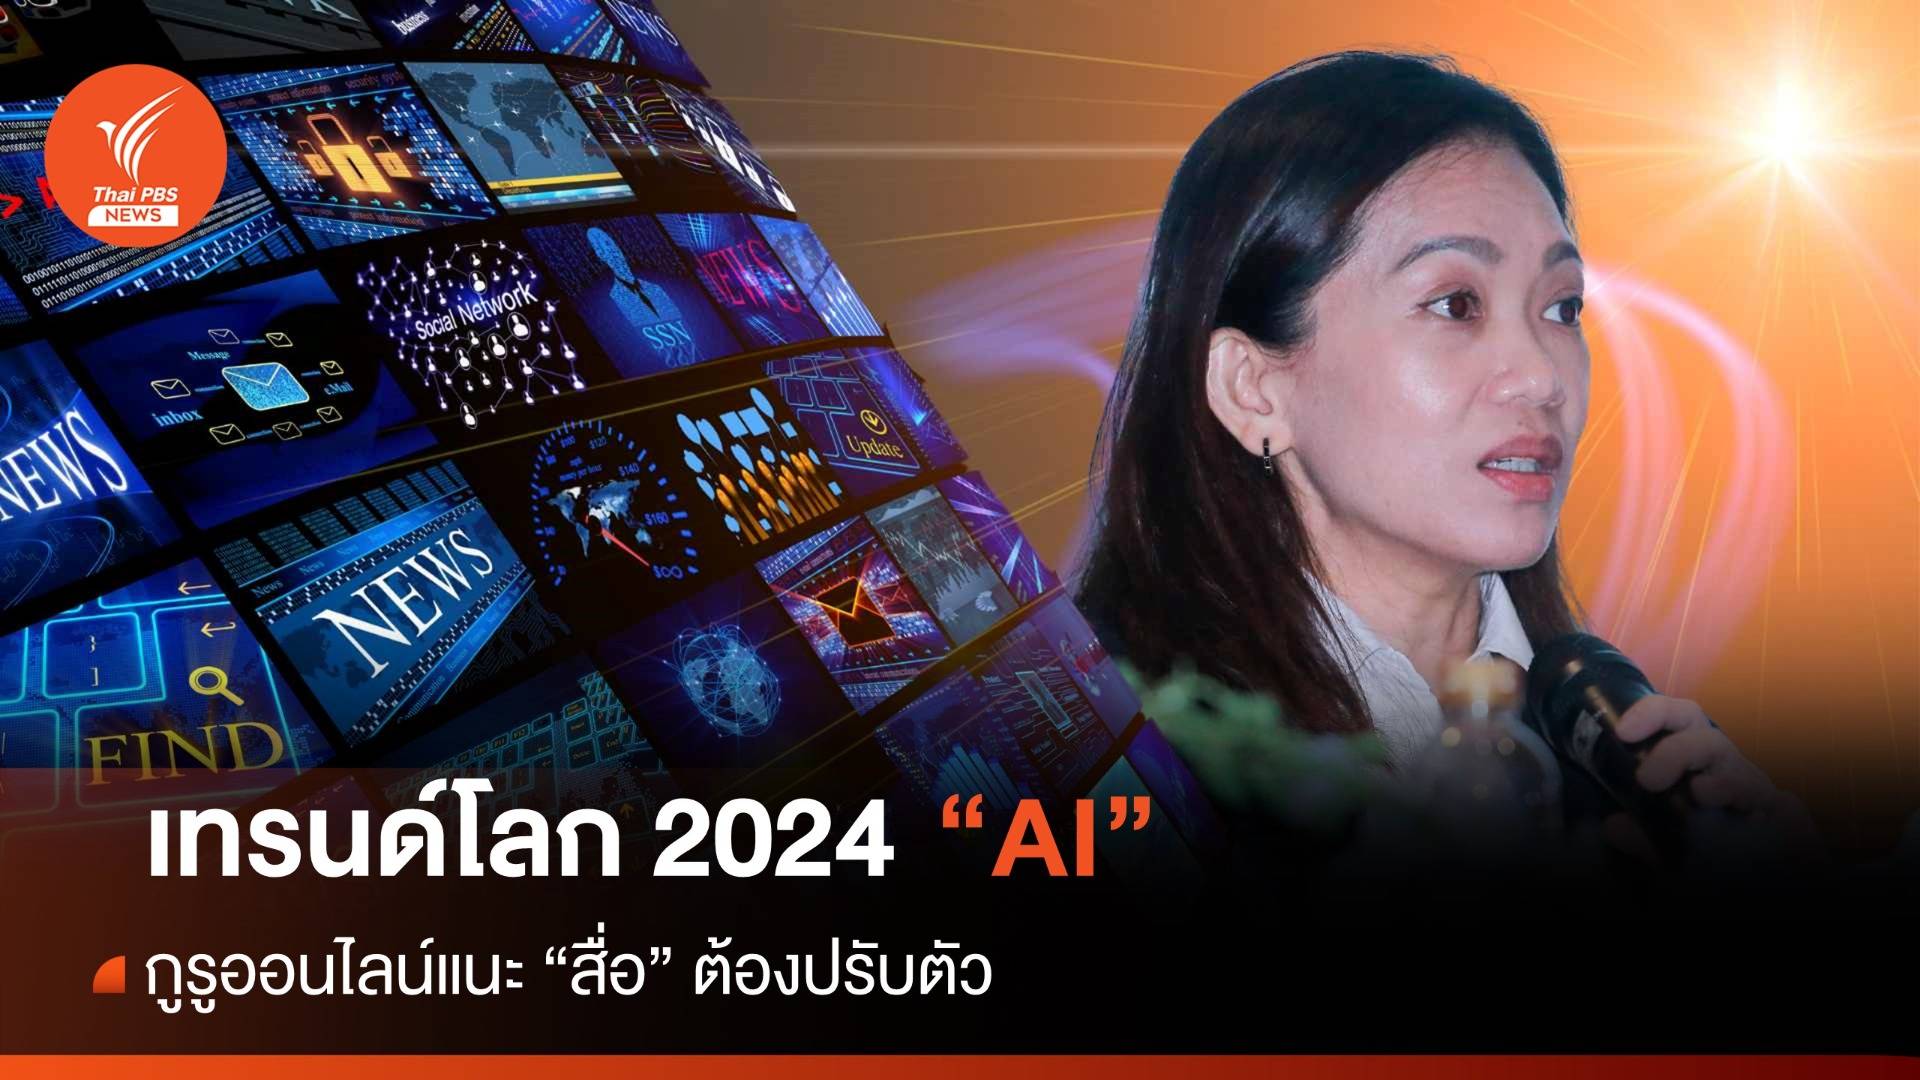 กูรูออนไลน์แนะเทรนด์โลก 2024 สื่อต้องปรับตัวเข้ากับ "AI" 